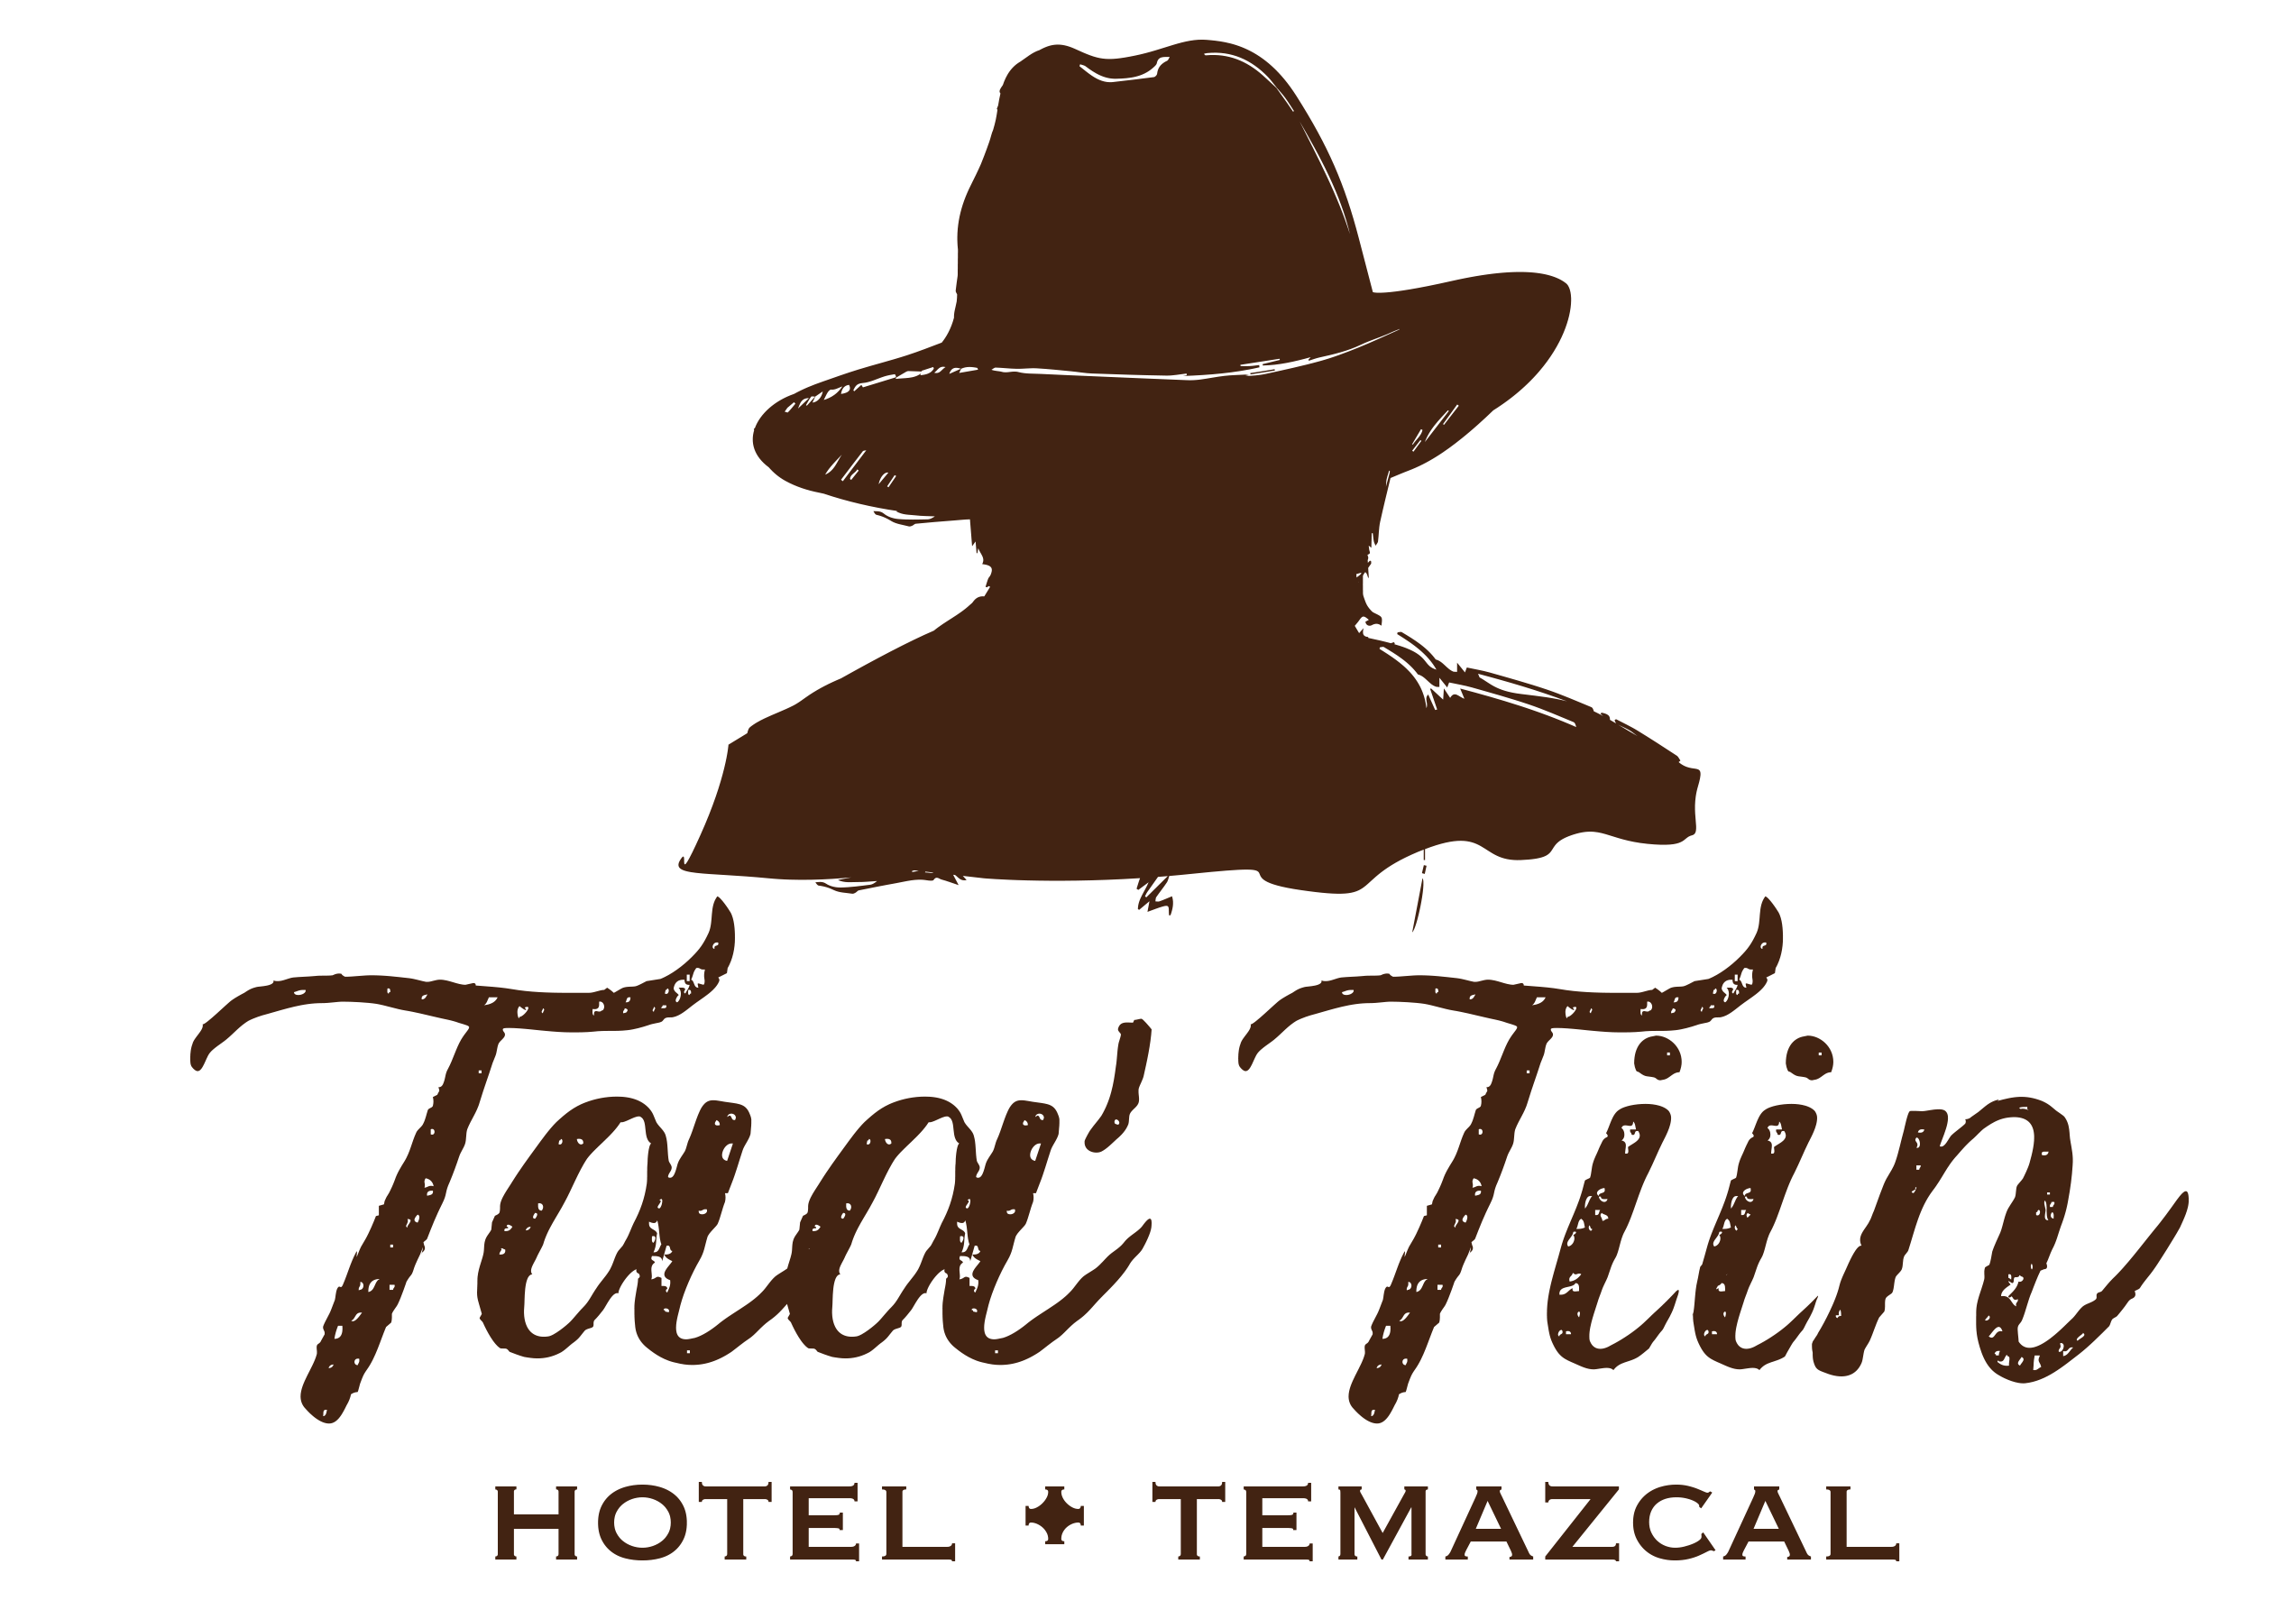 Hotel Taa Tiin